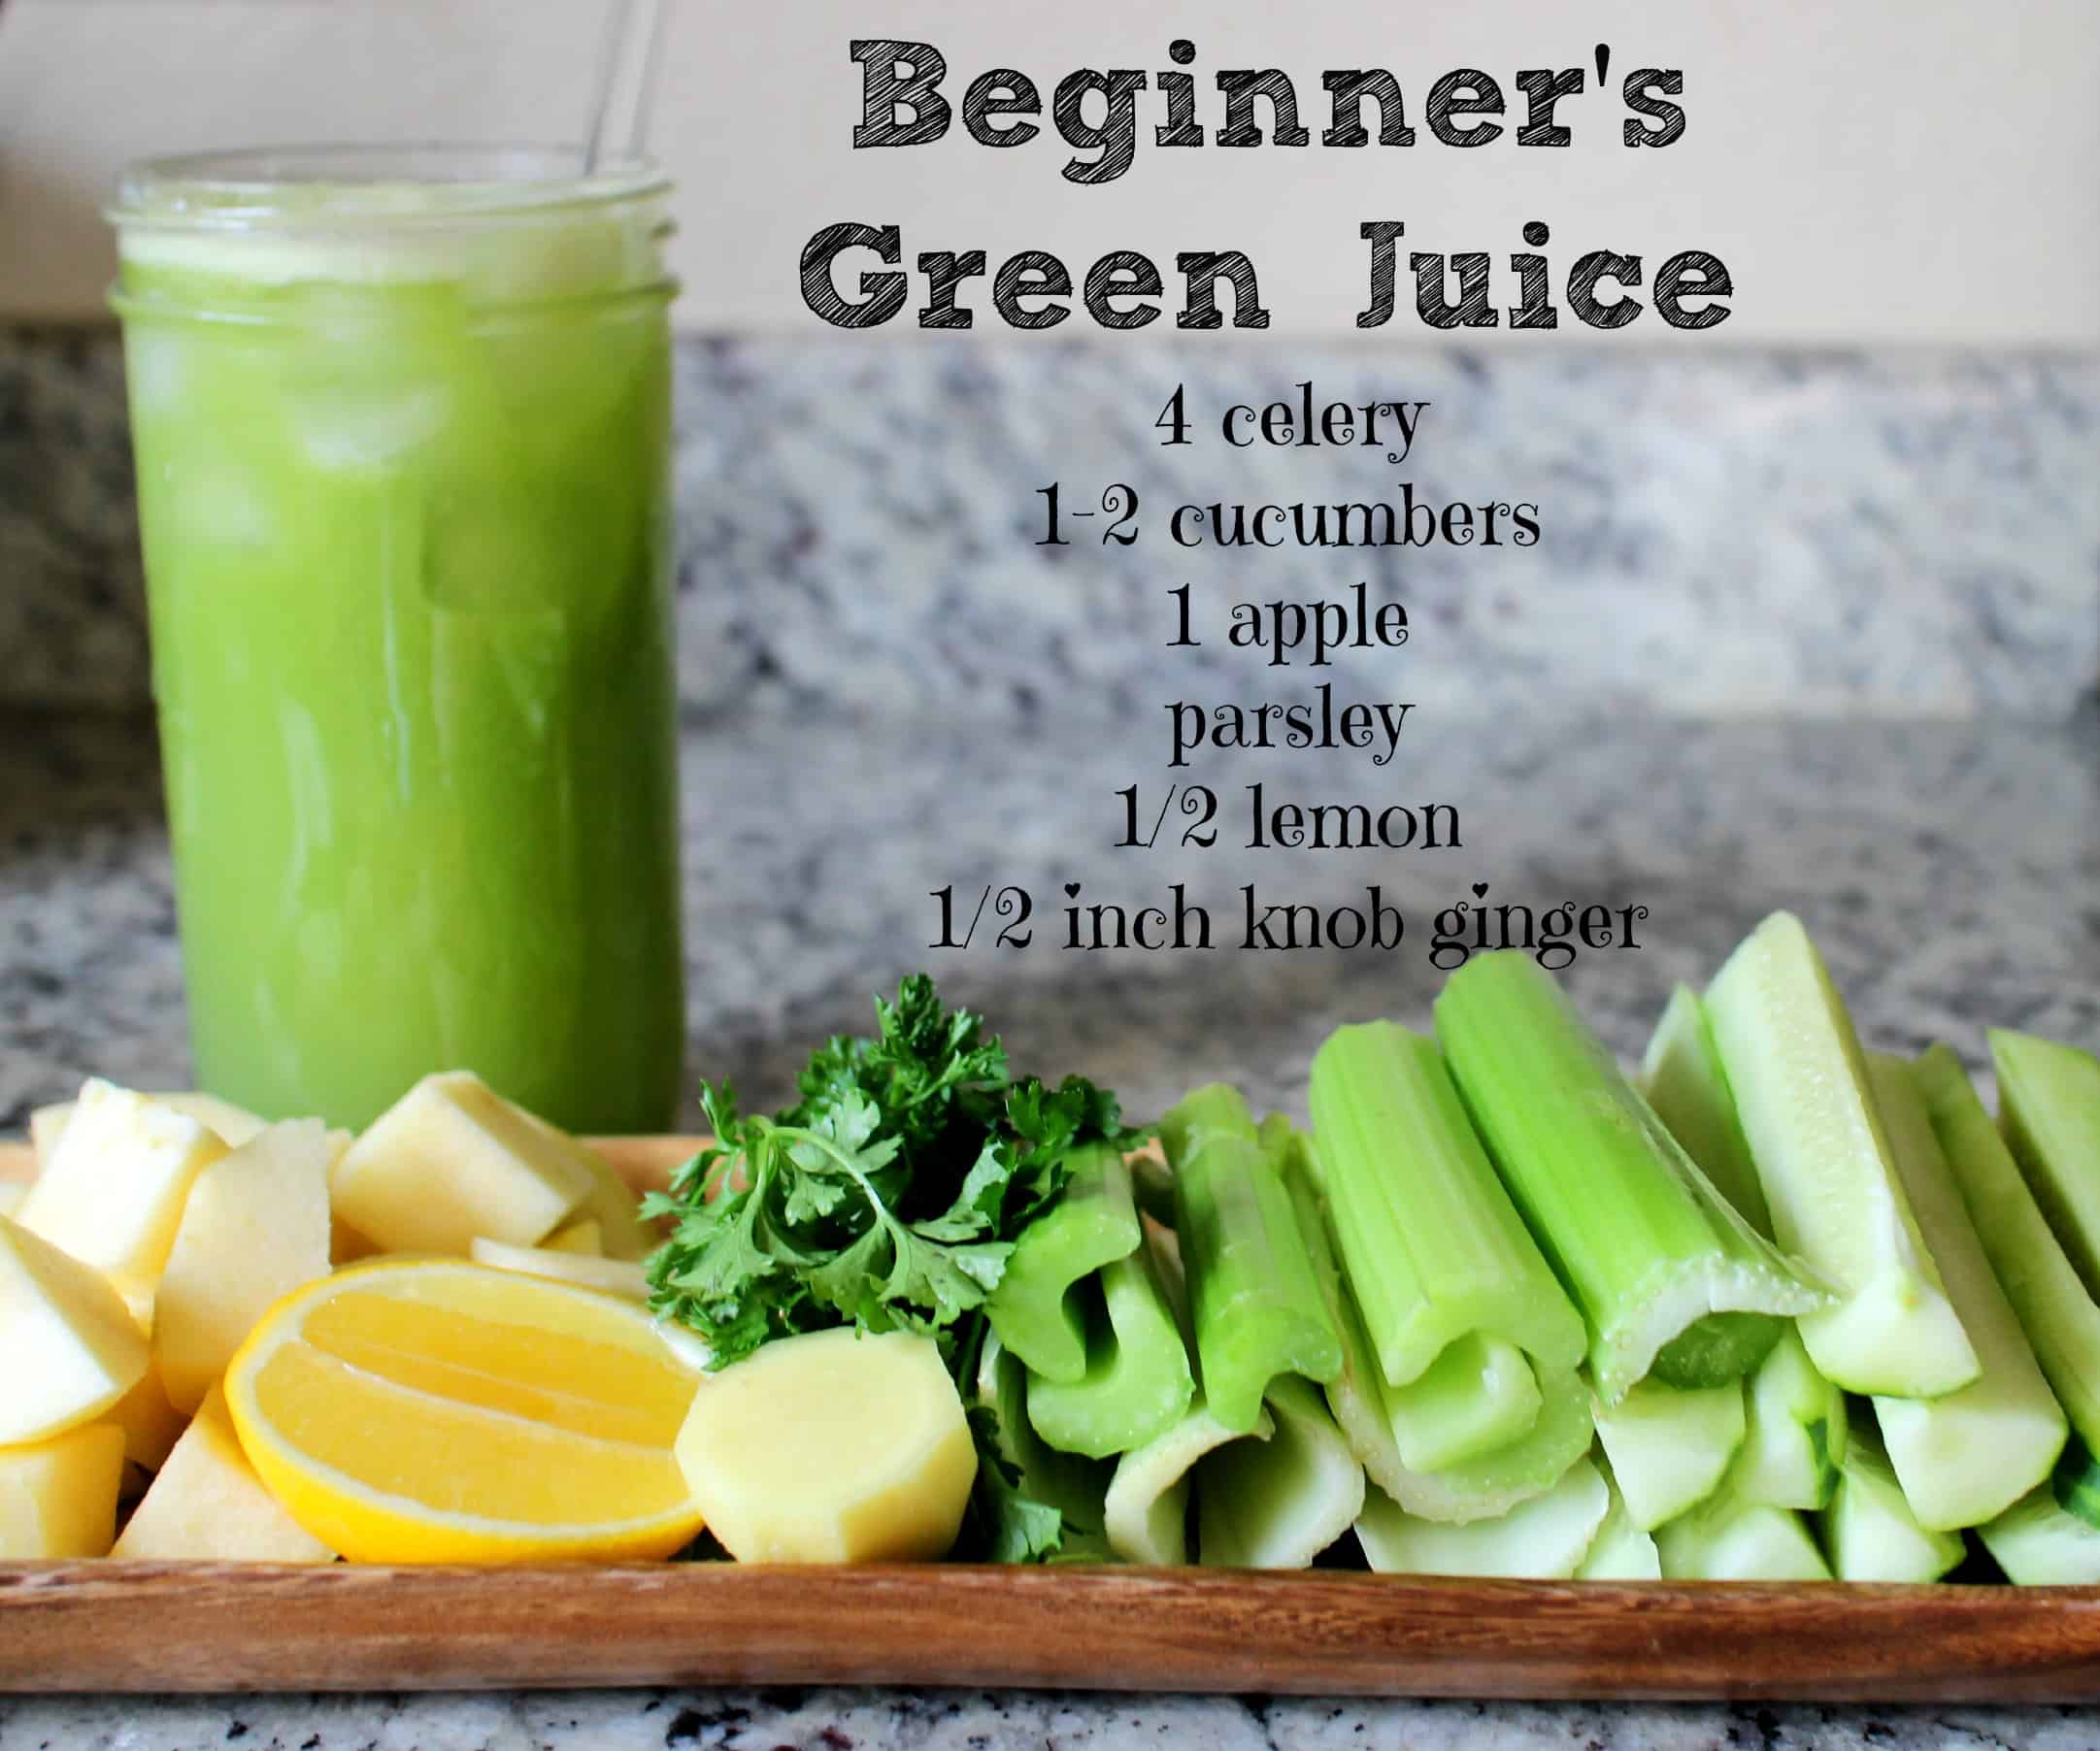 Beginner’s green juice recipe